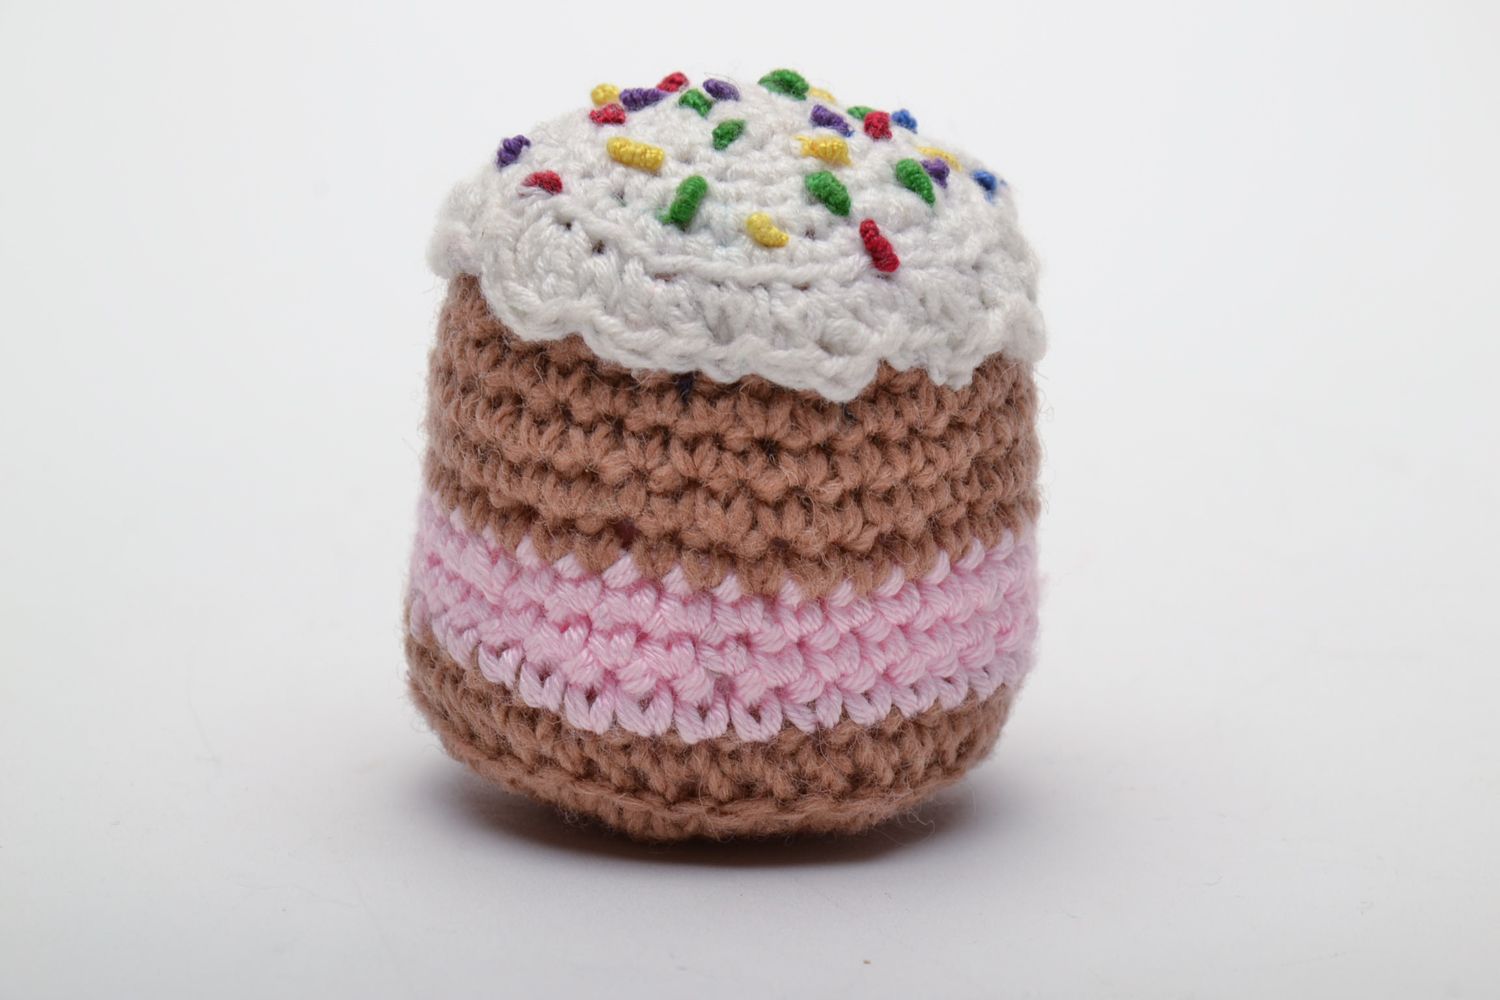 Soft crochet toy cake photo 3